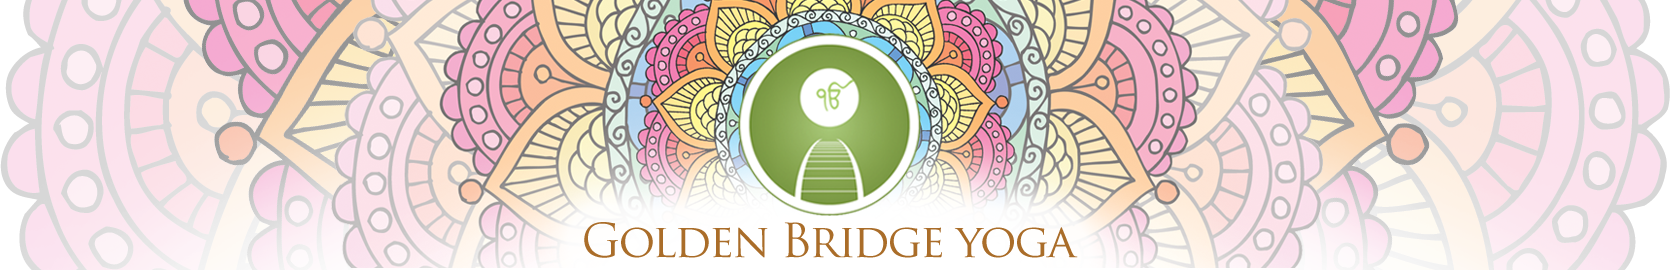 Golden Bridge Yoga 